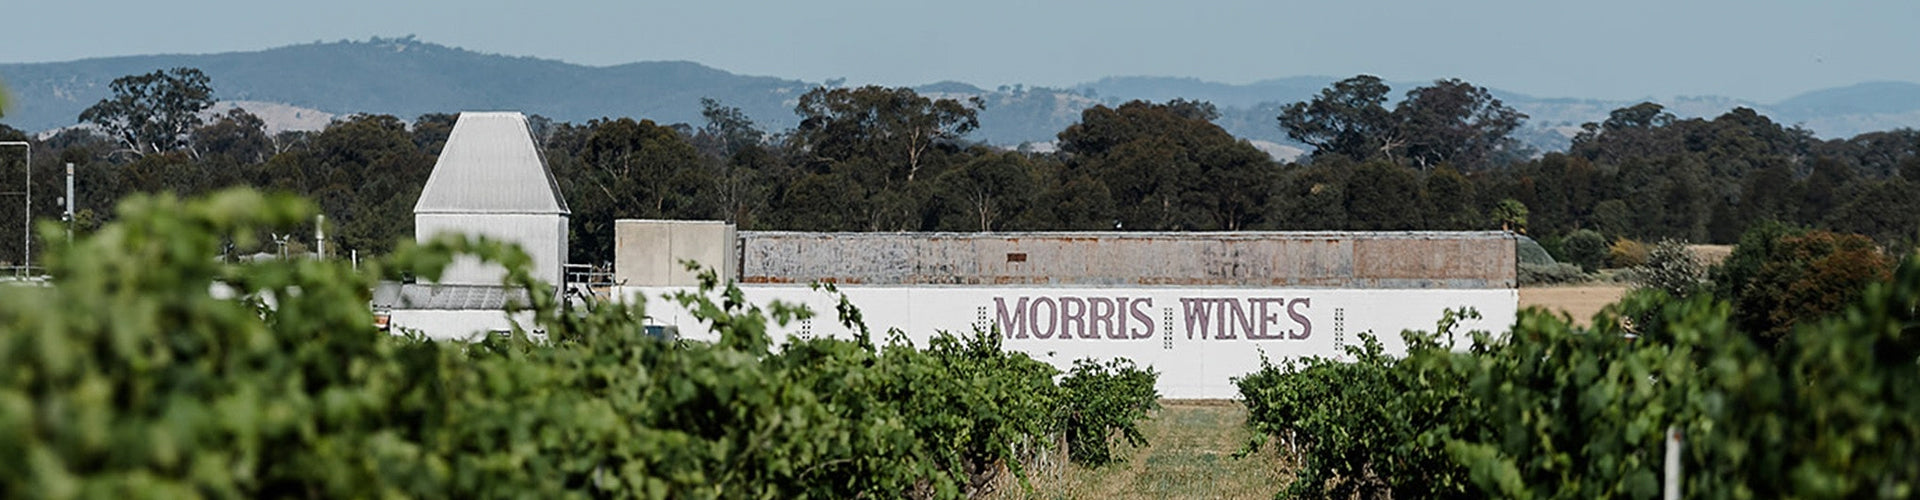 Morris Wines Winery & Vineyards in Rutherglen, Victoria